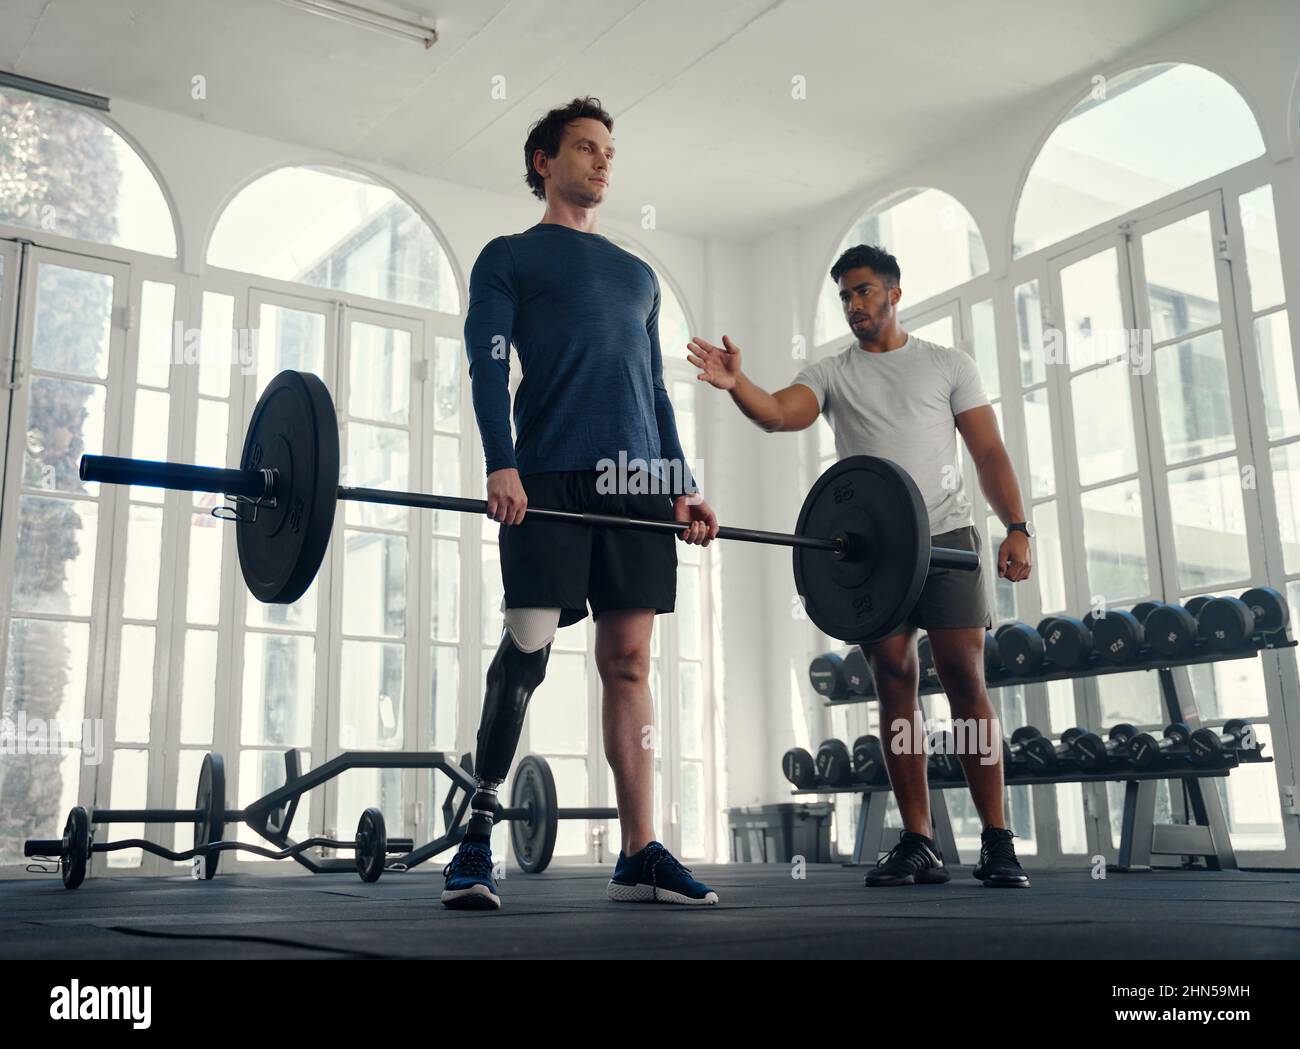 autre façon de faire de l'haltérophilie avec son entraîneur dans la salle de gym. Homme avec une jambe prothétique étant entraîné par son entraîneur Banque D'Images